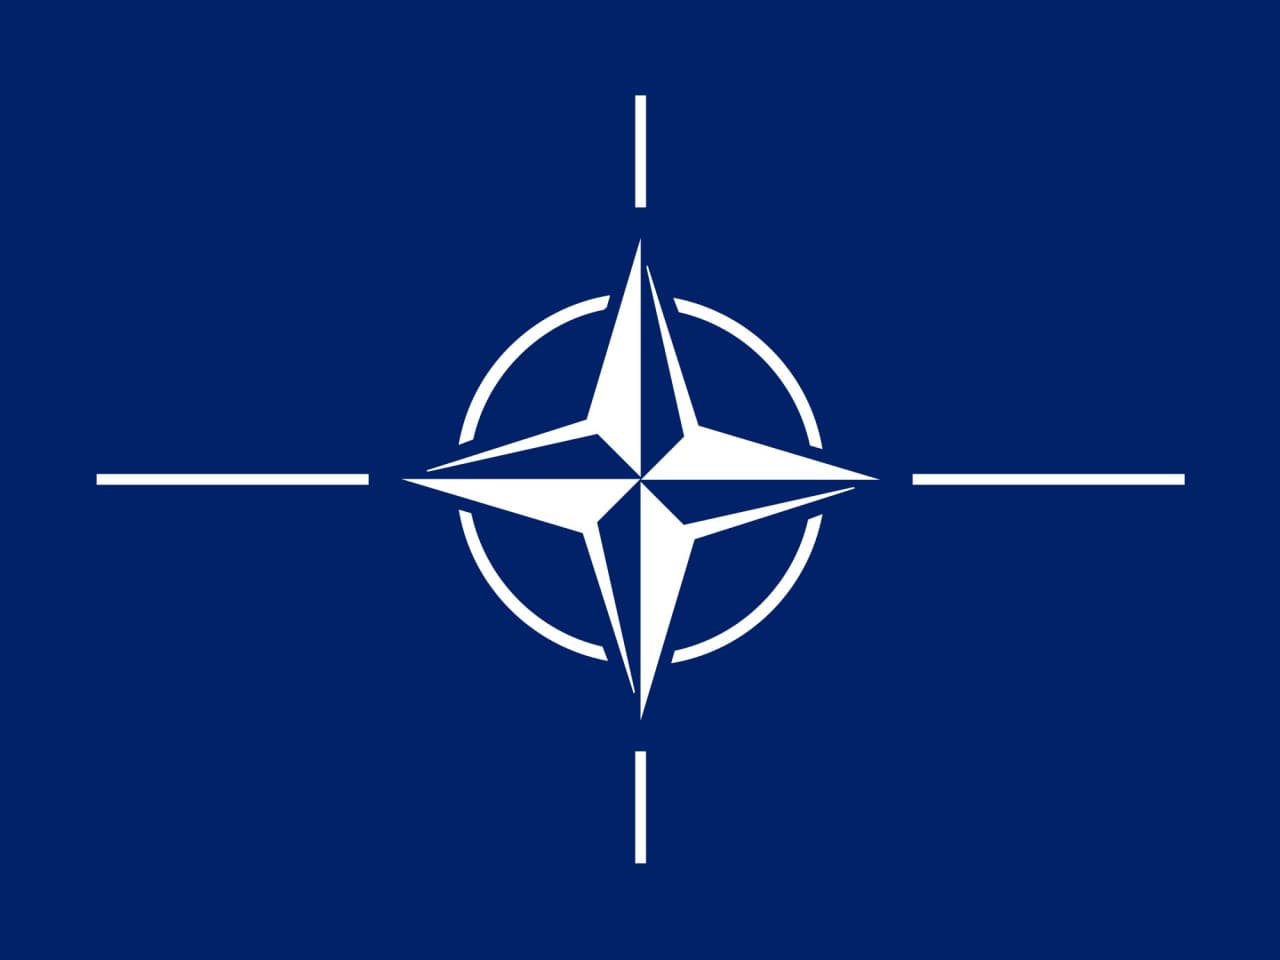 “Rusiya bizə göstəriş verə bilməz” - NATO sözçüsündən SƏRT AÇIQLAMA 